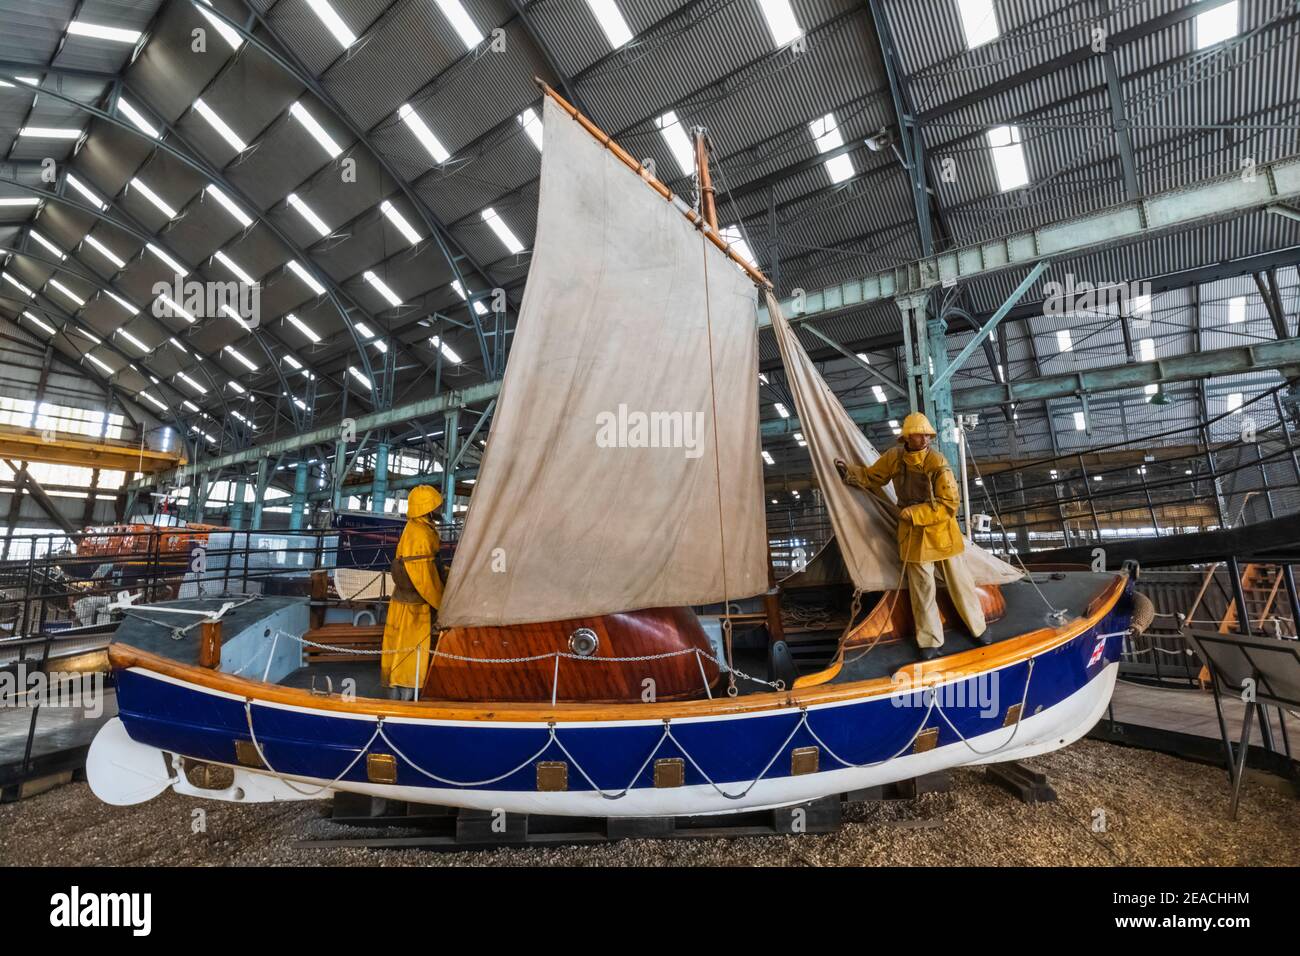 England, Kent, Chatham, die historische Werft, RNLI Rettungsboot Museum, Ausstellung historischer Rettungsboote Stockfoto